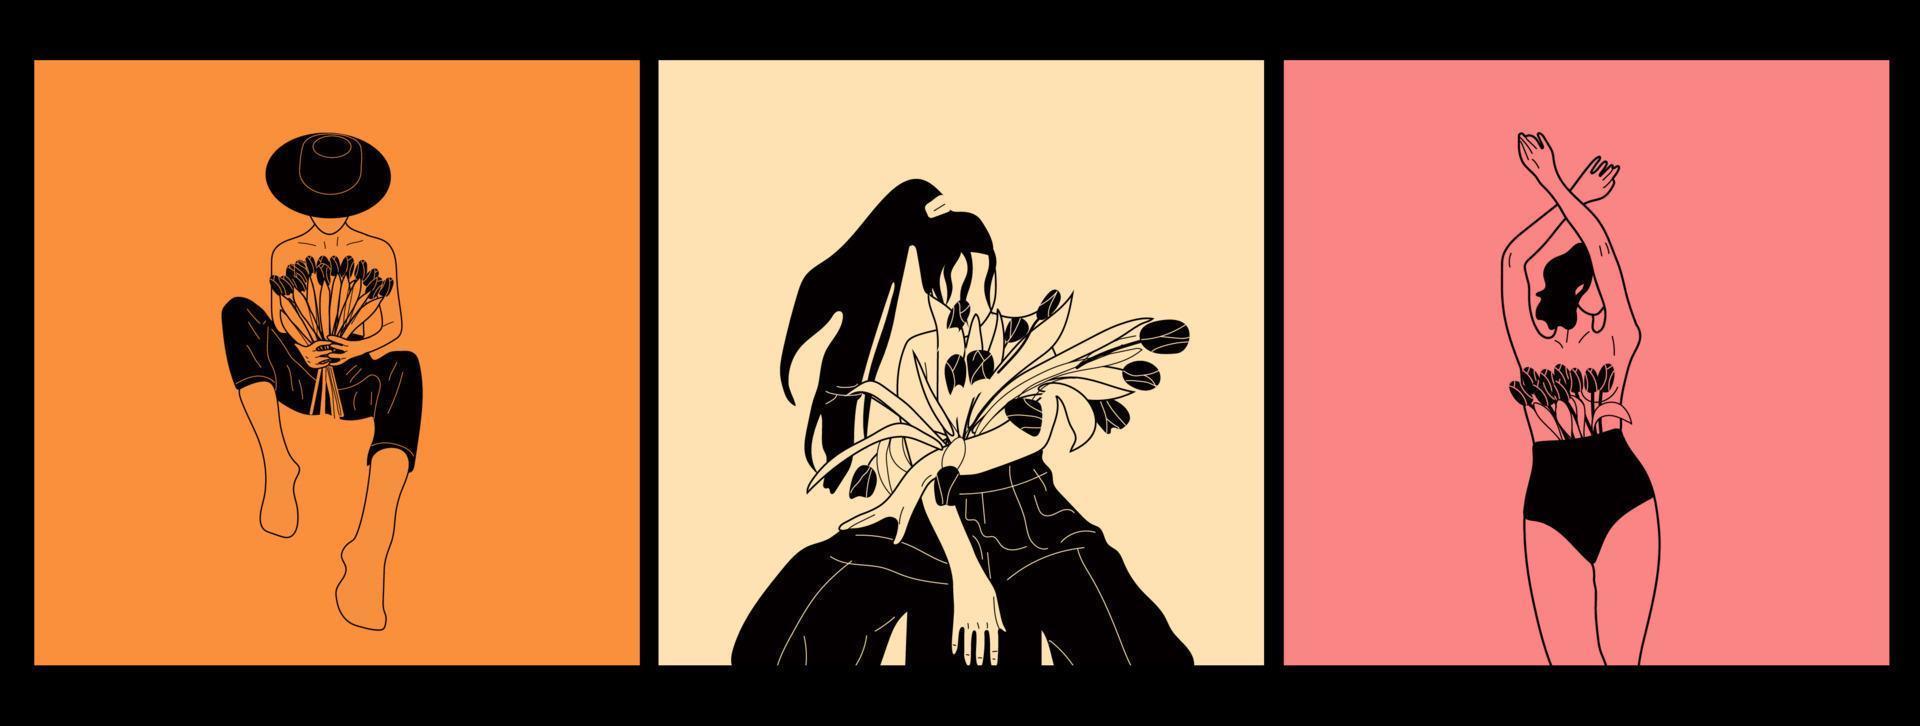 ensemble de trois femelles fleurissant à partir de l'illustration vectorielle plane. femme nue avec des fleurs poussant de la poitrine. concept de féminité, de féminisme, de prospérité et d'amour de soi. vecteur